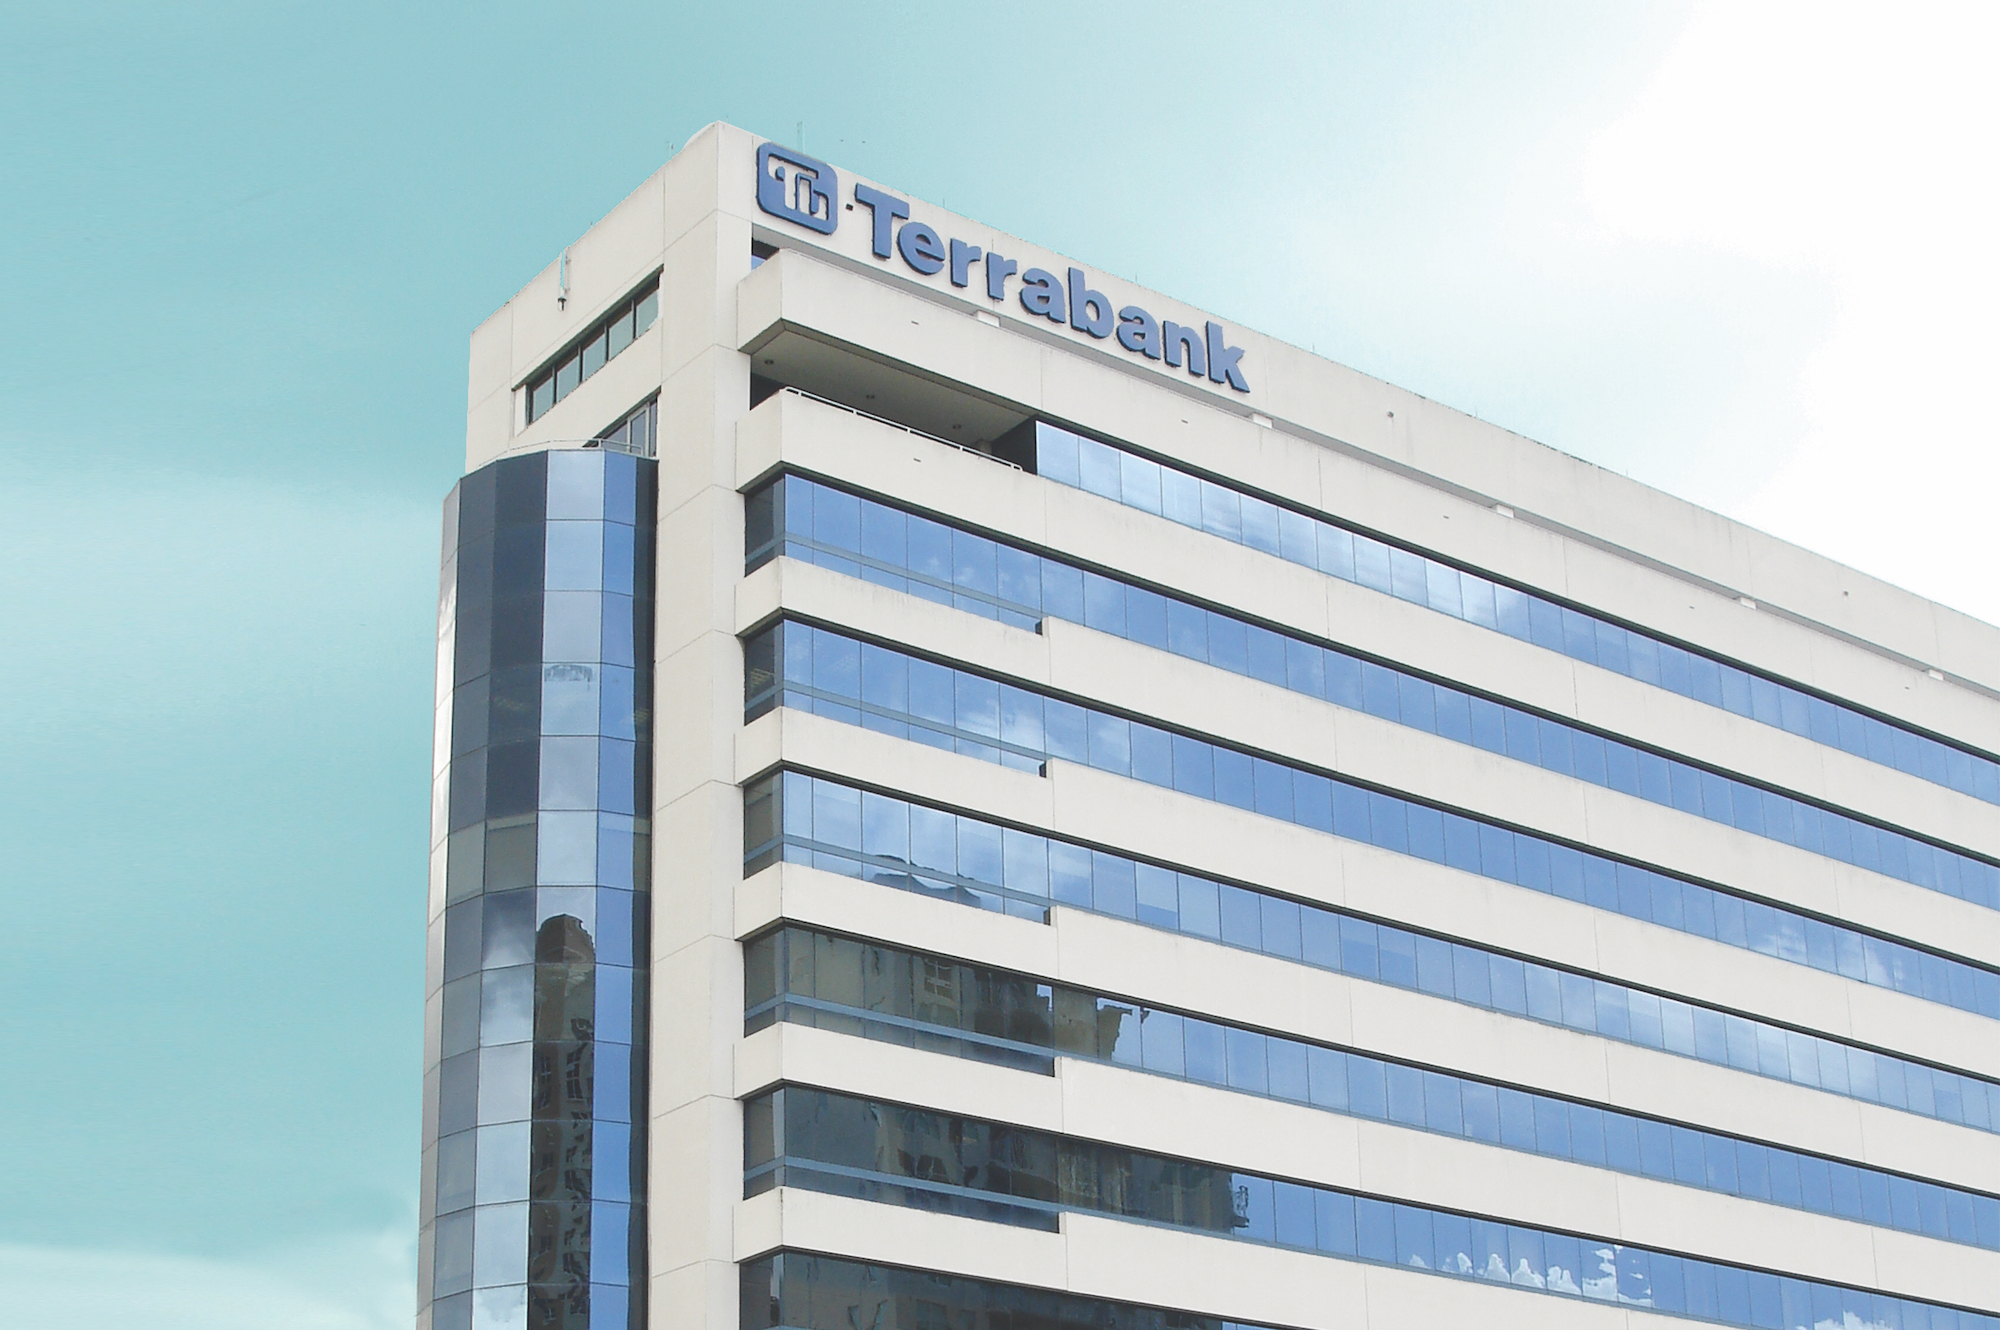 Terrabank es reconocido internacionalmente por su plataforma digital para préstamos